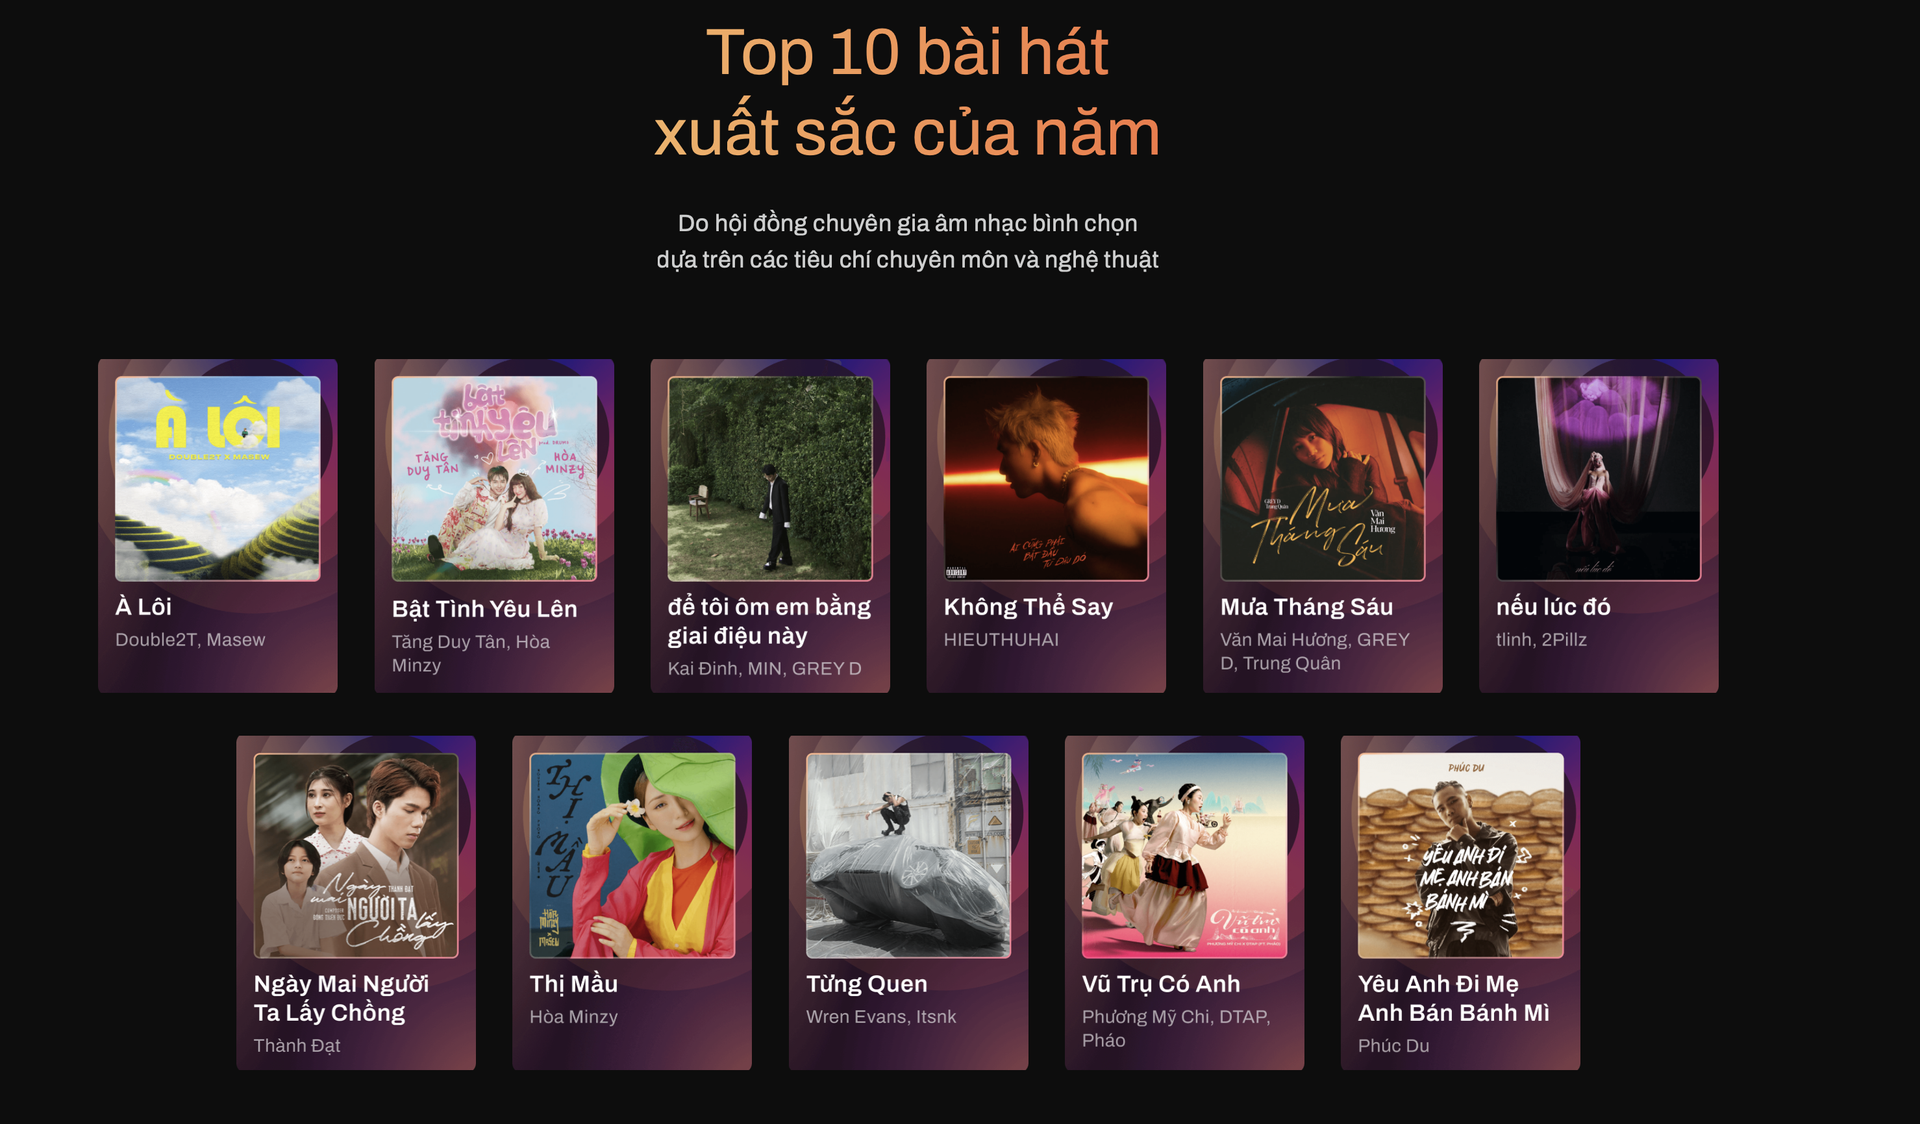 Top 10 bài hát xuất sắc nhất của năm 2023, trong đó 2 bài hát nằm ở vị trí thứ 10 và 11 có lượt bình chọn bằng nhau nên được hội đồng cùng đưa vào danh sách.